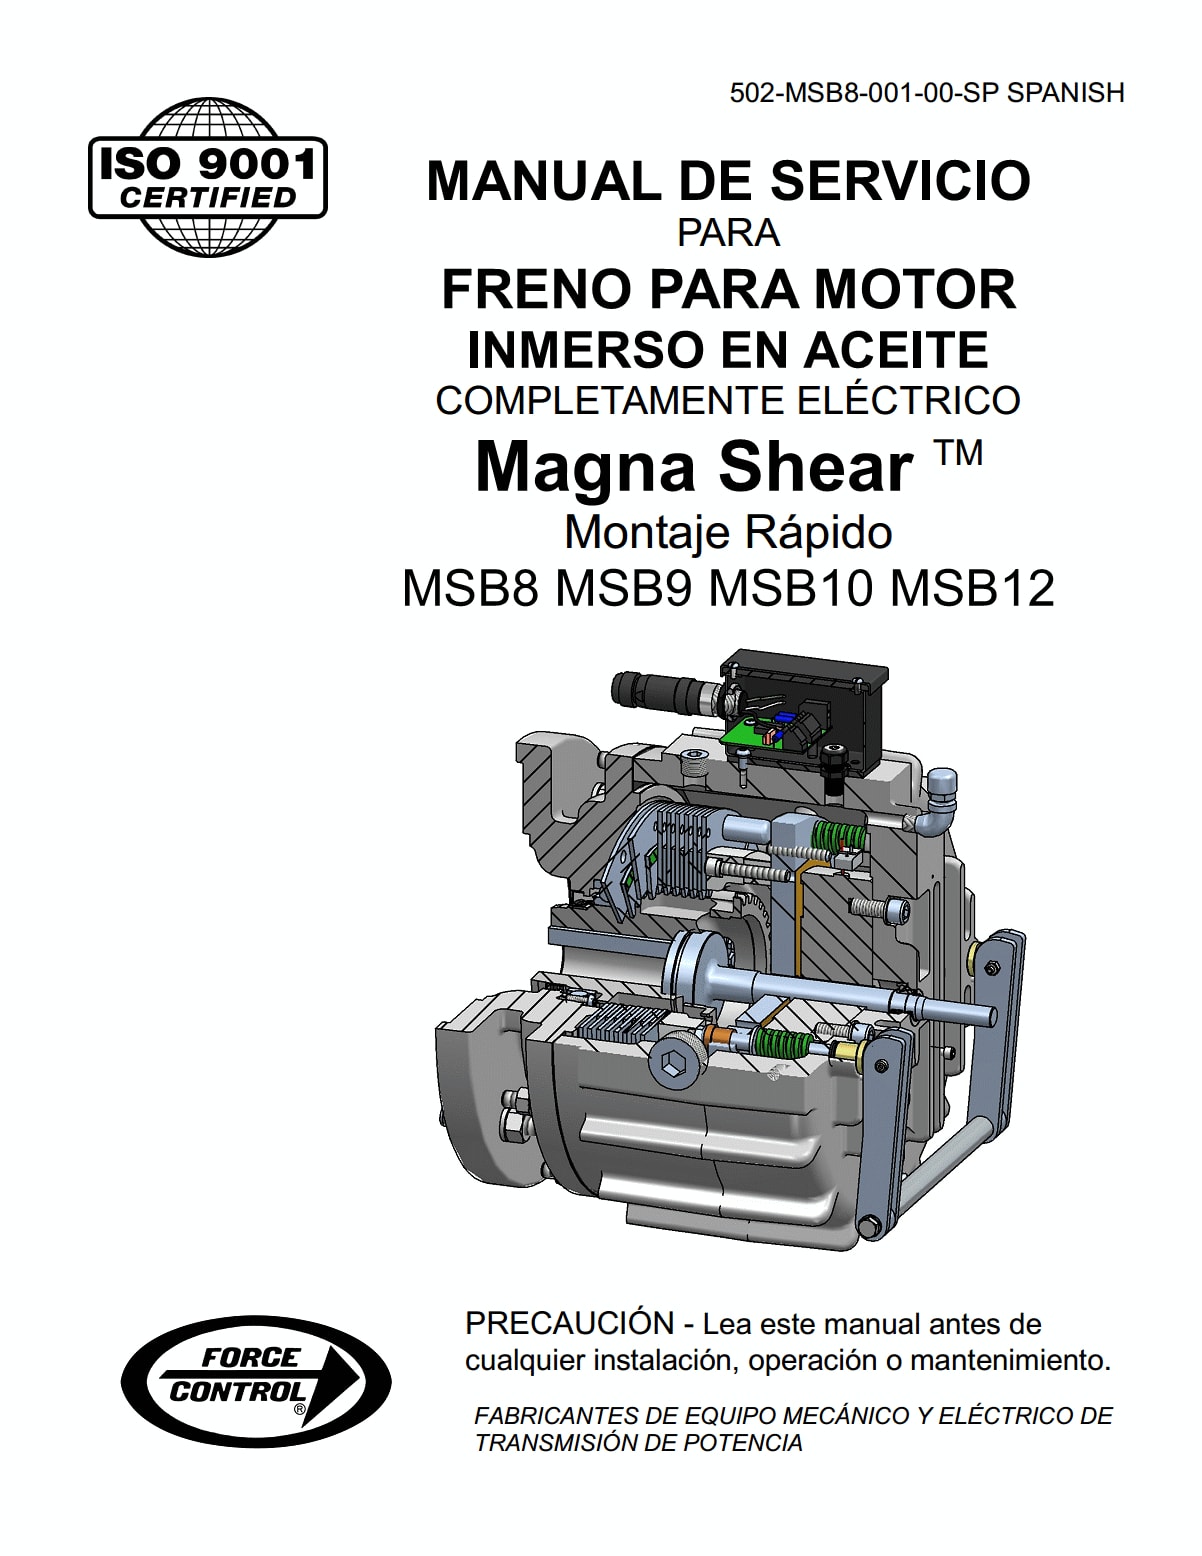 MSB8 9-10-12 Magnashear QM Manual 502-MSB8-001-00-SP SPANISH